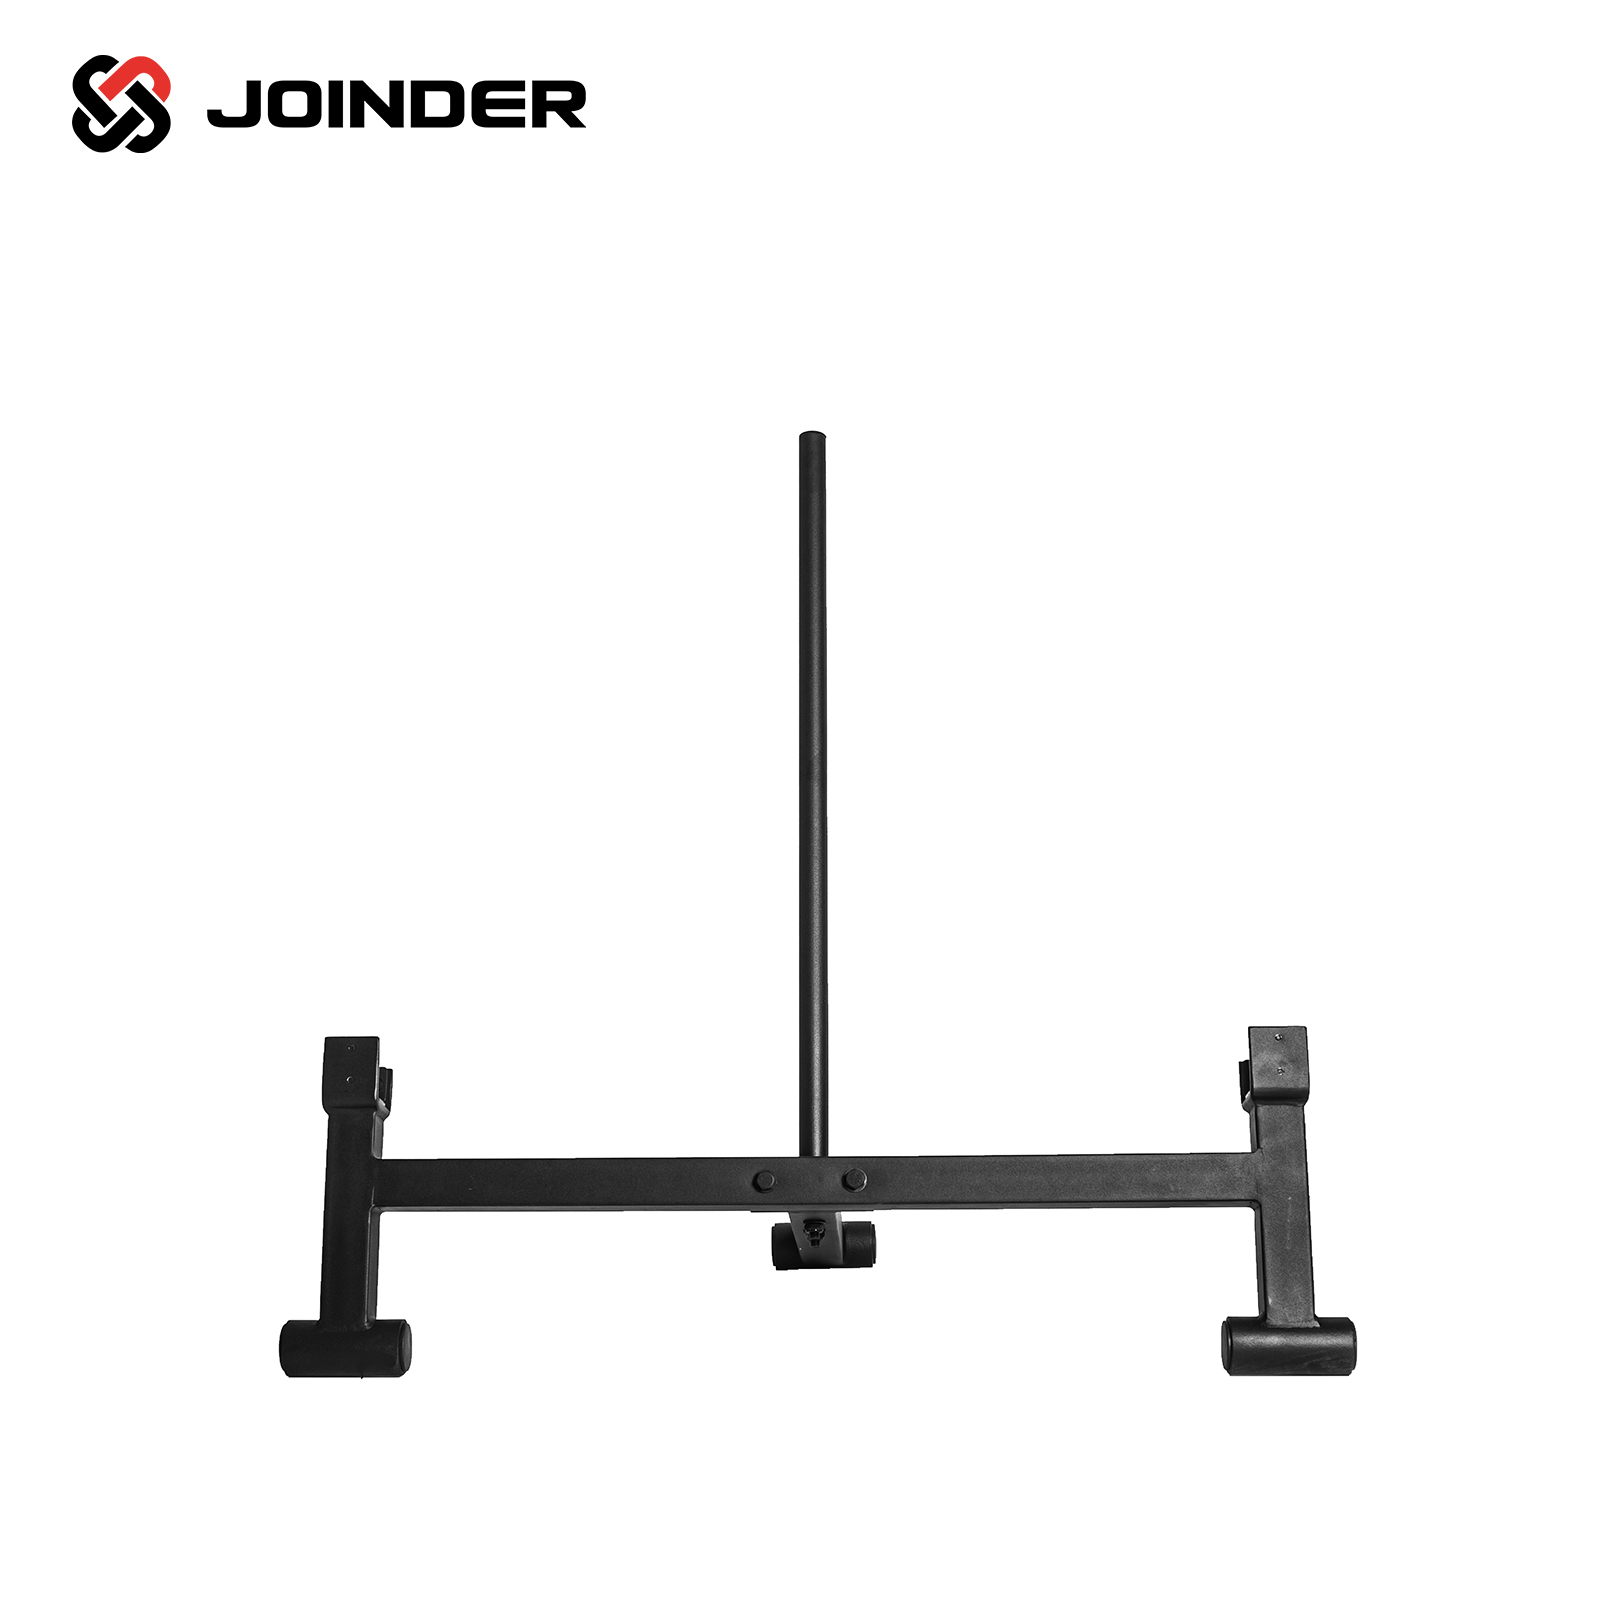 Thanh hỗ trợ nâng hạ tháo lắp tạ đĩa bar jack joinder JD8150